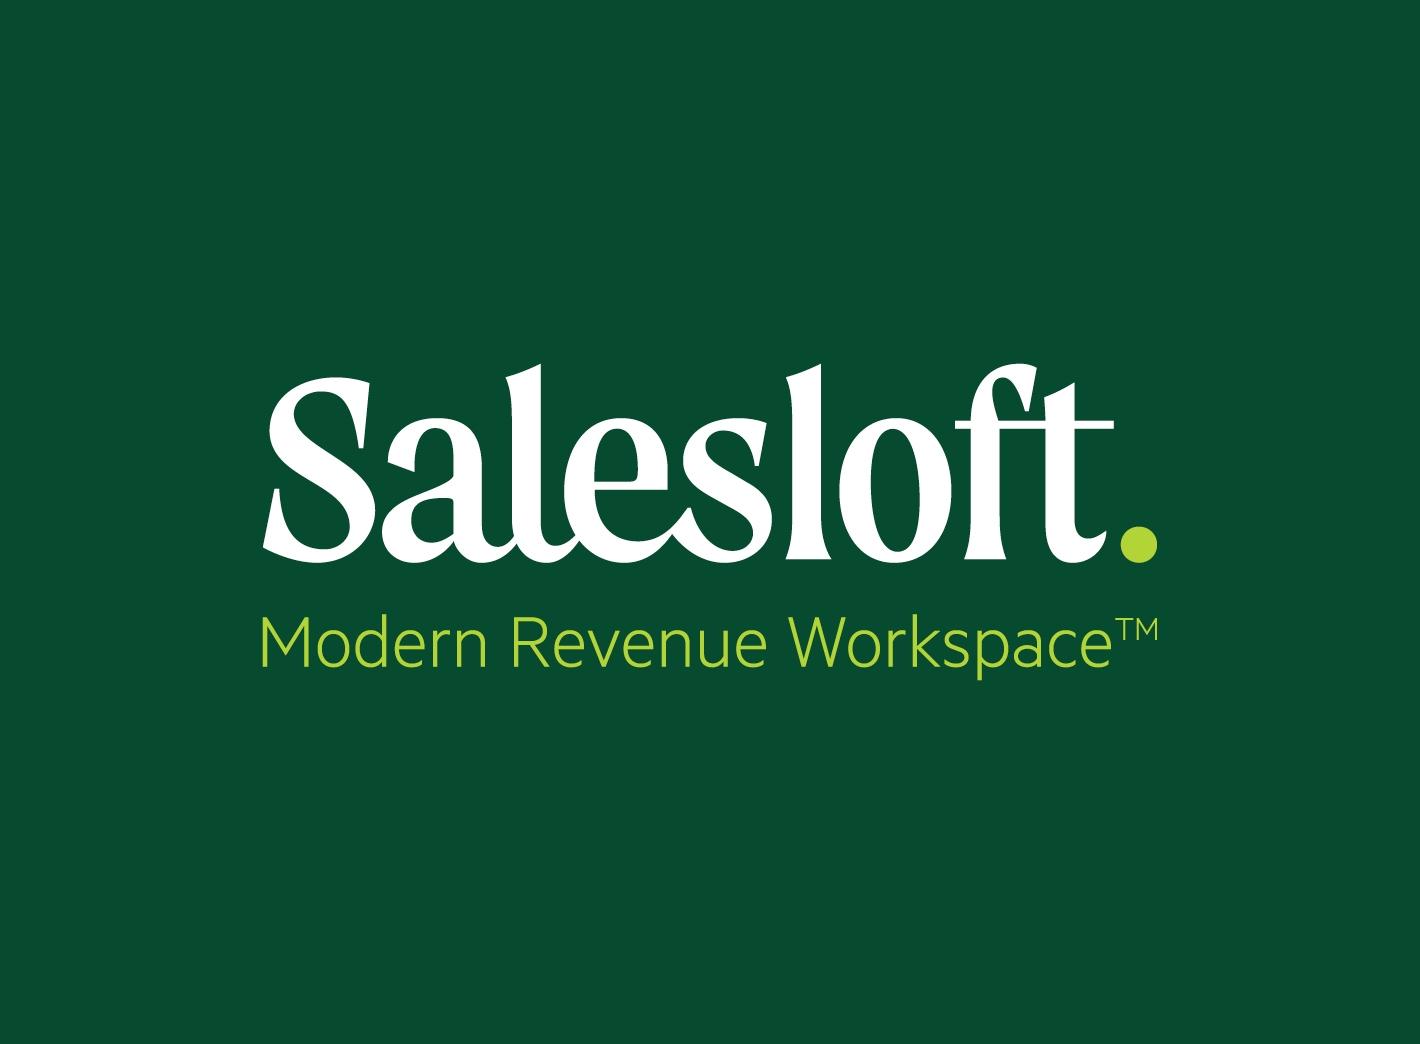 "Salesloft Modern Revenue Workspace"